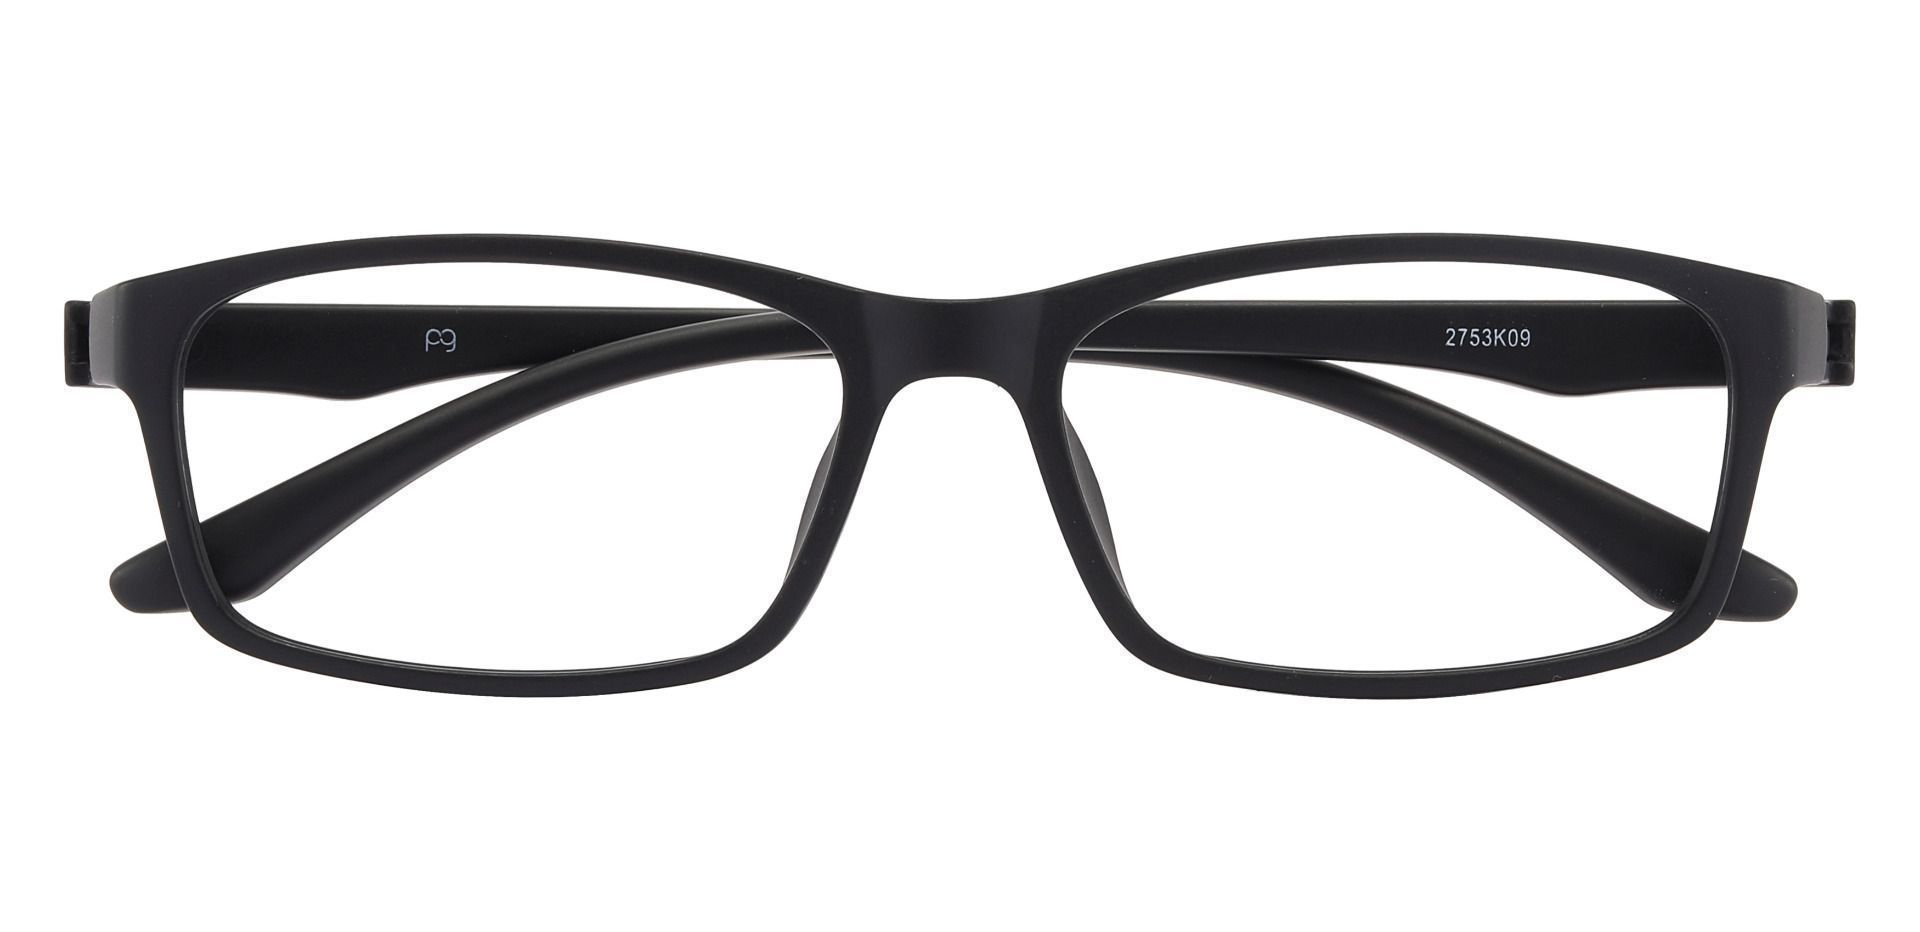 Poplar Rectangle Eyeglasses Frame -   Matte Black     